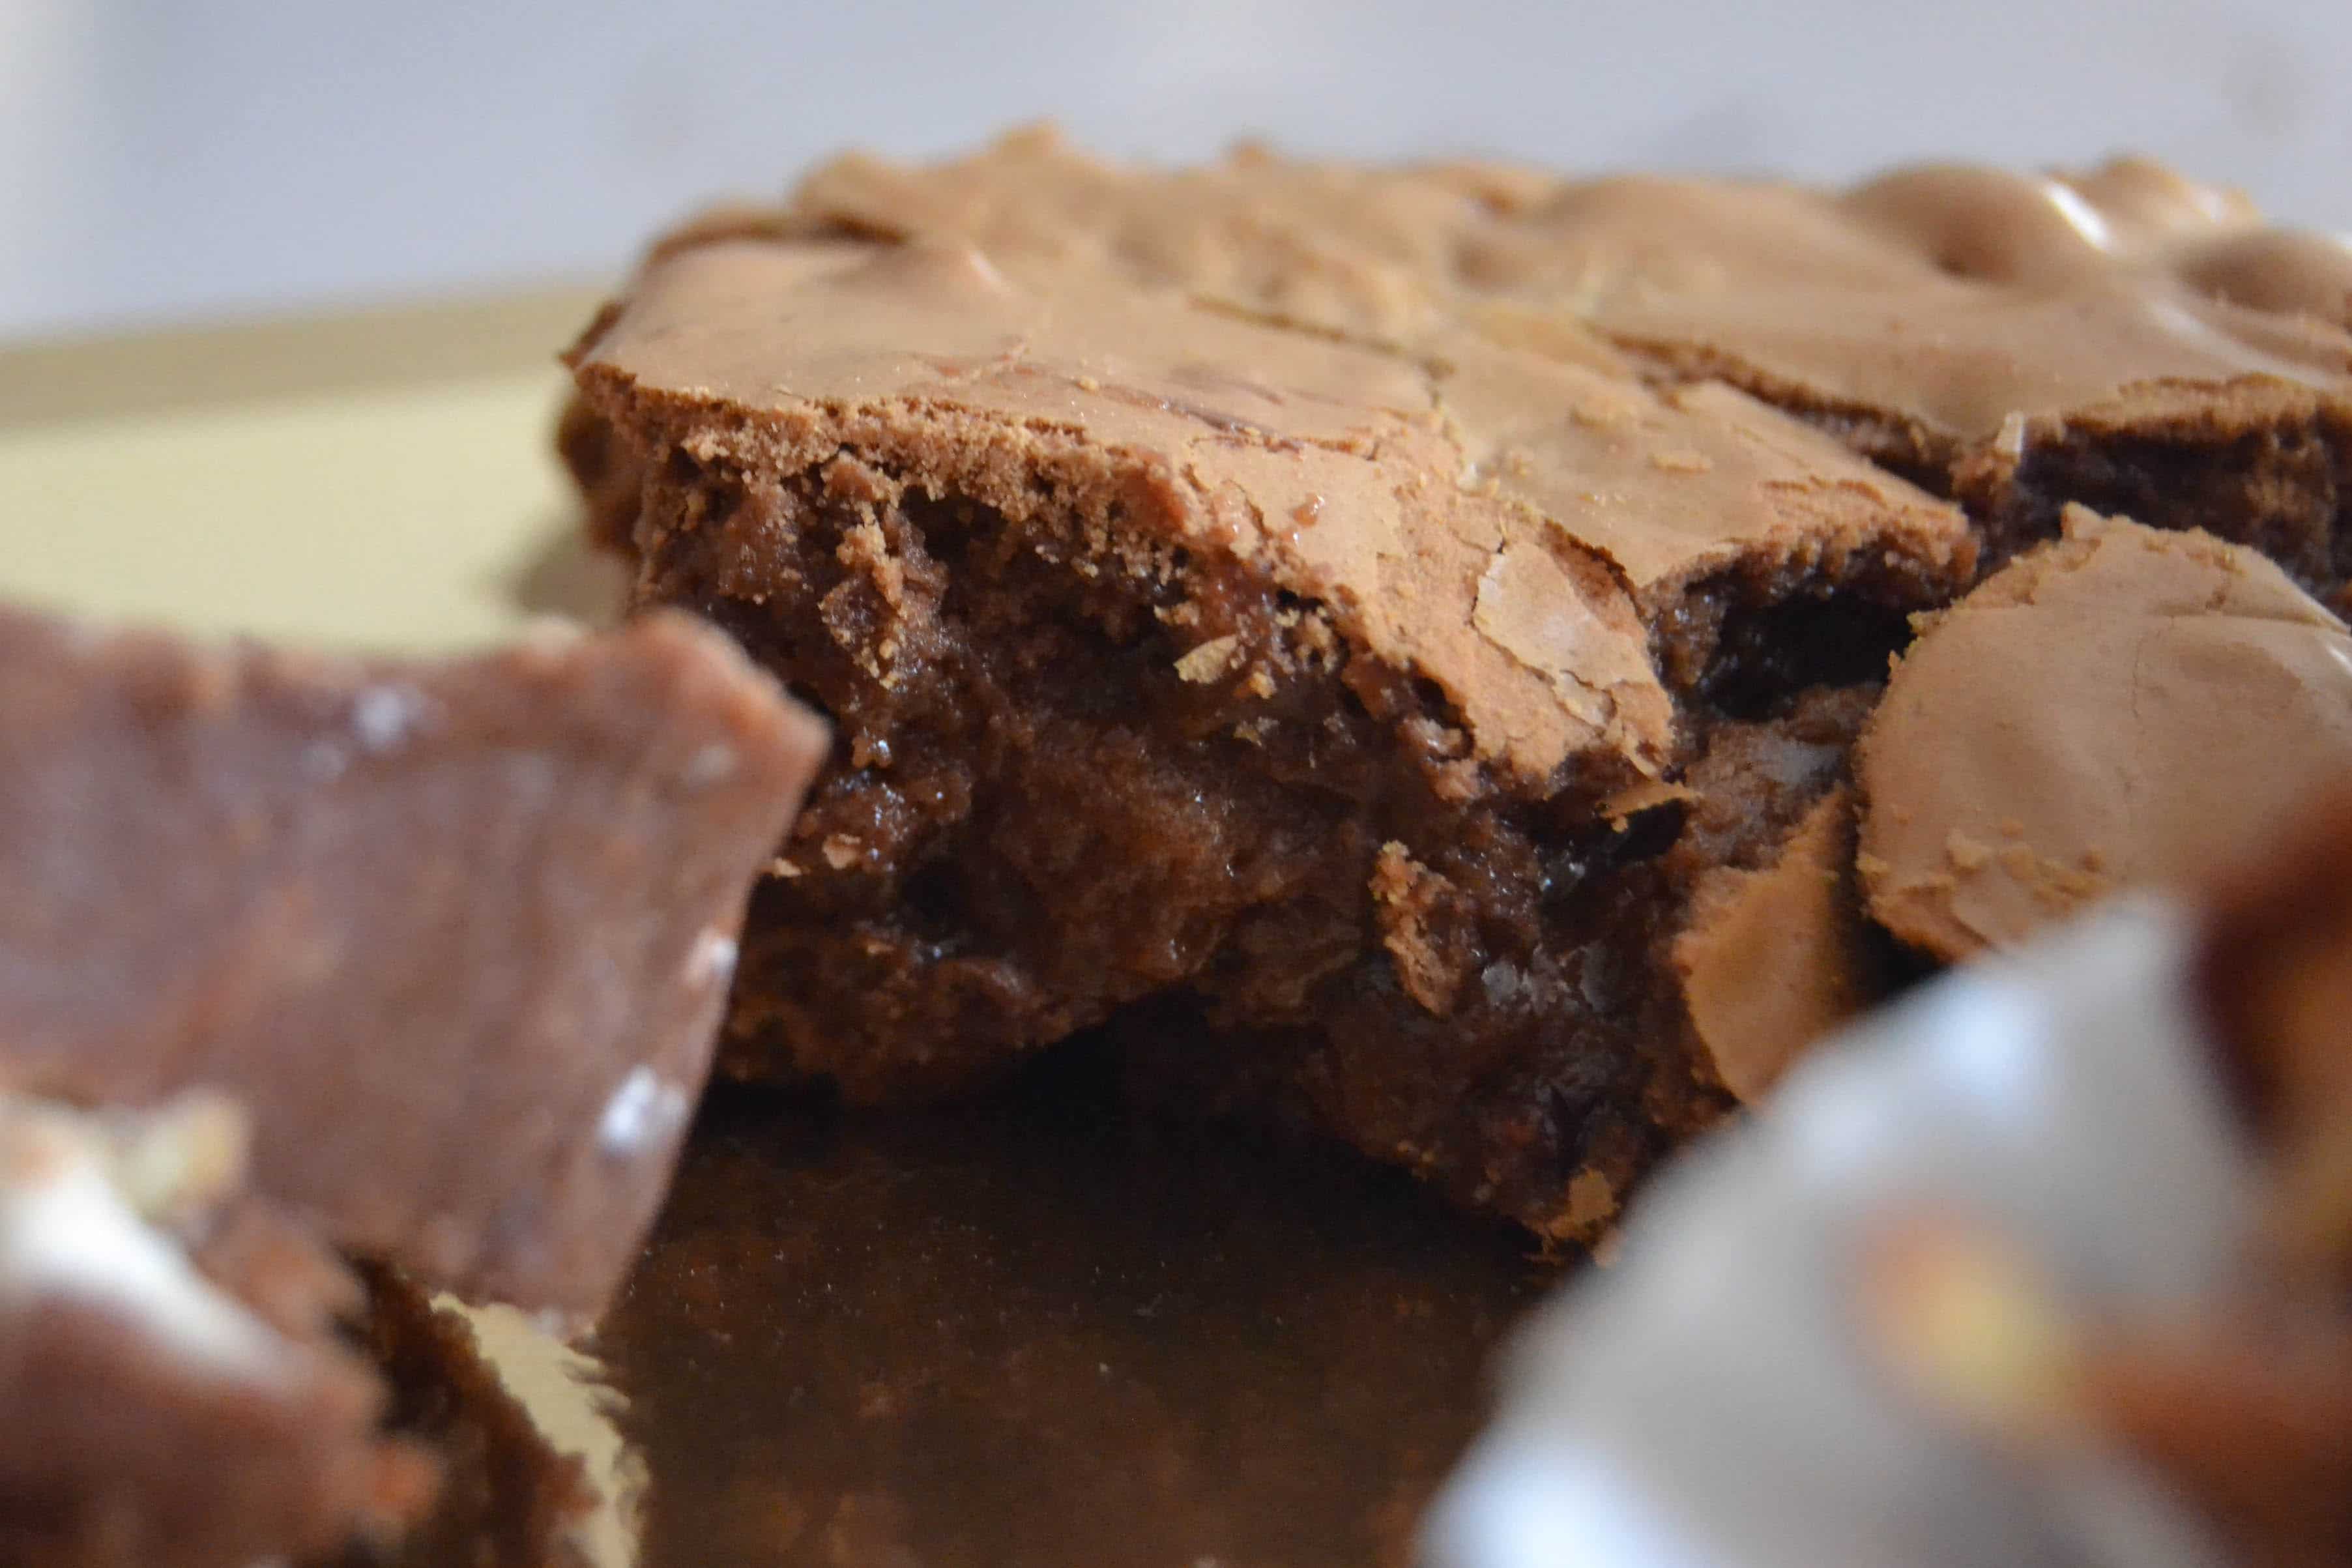 gateau au chocolat brownies recette petits bonheurs du mois avril fidjigirl